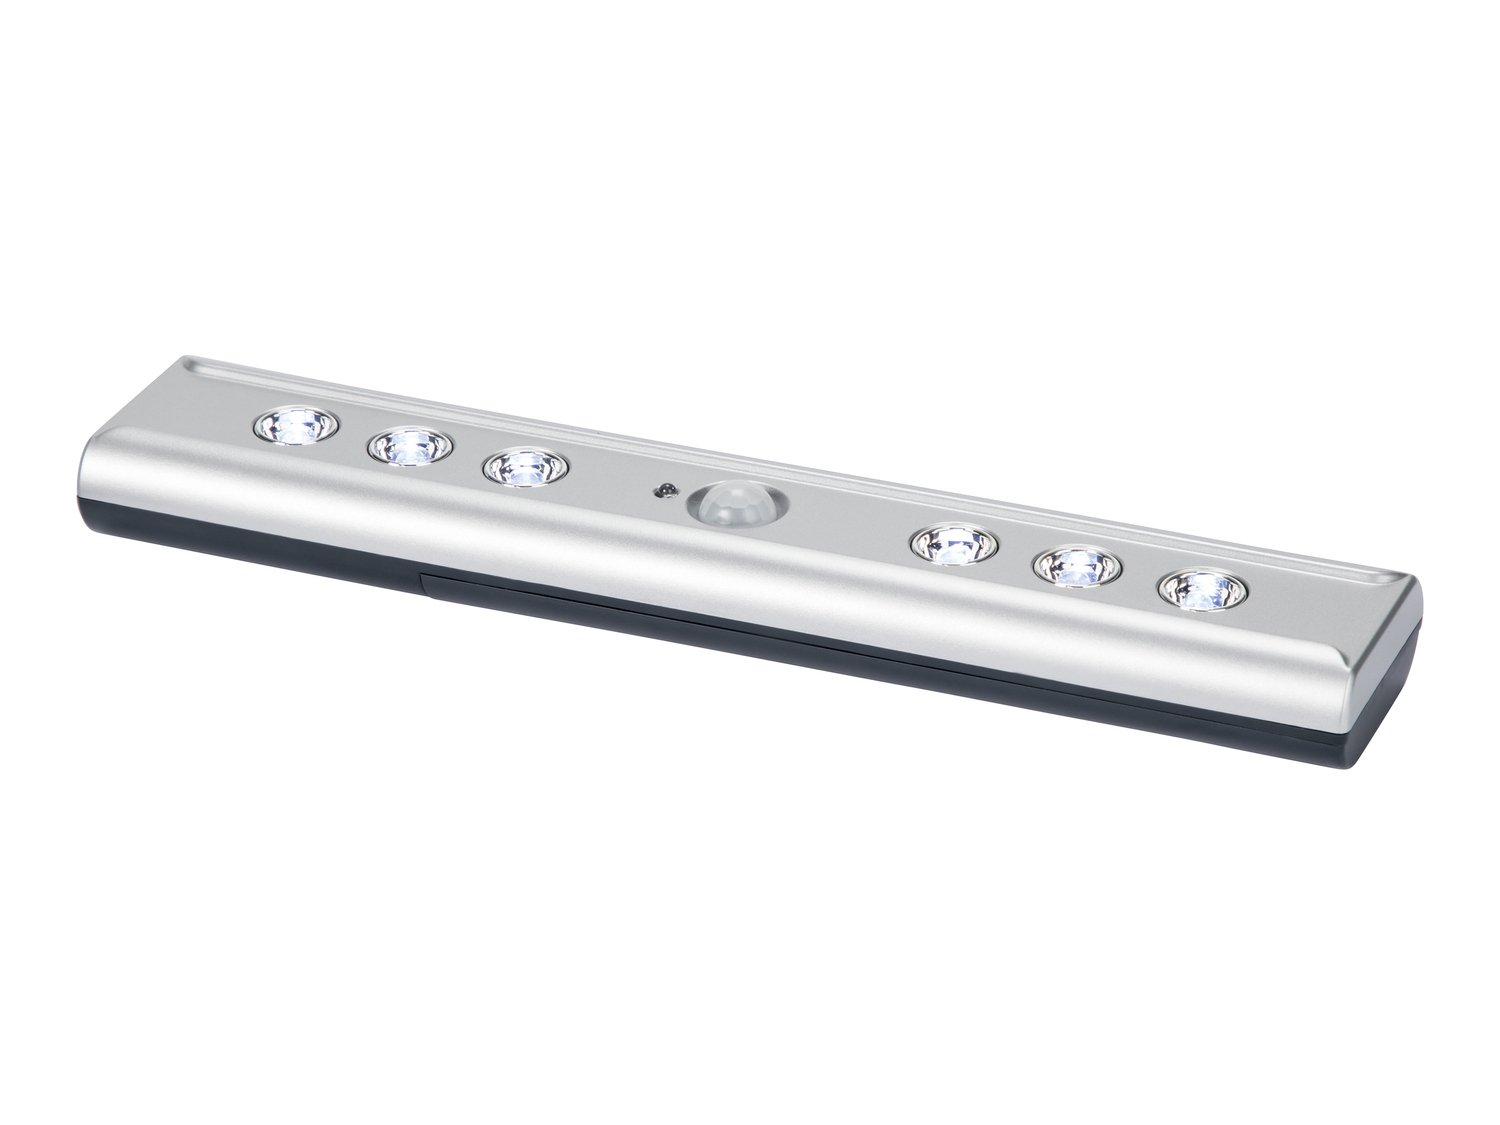 Lampada sottopensile LED con sensore di movimento Livarno Lux, prezzo 6.99 € 
- ...